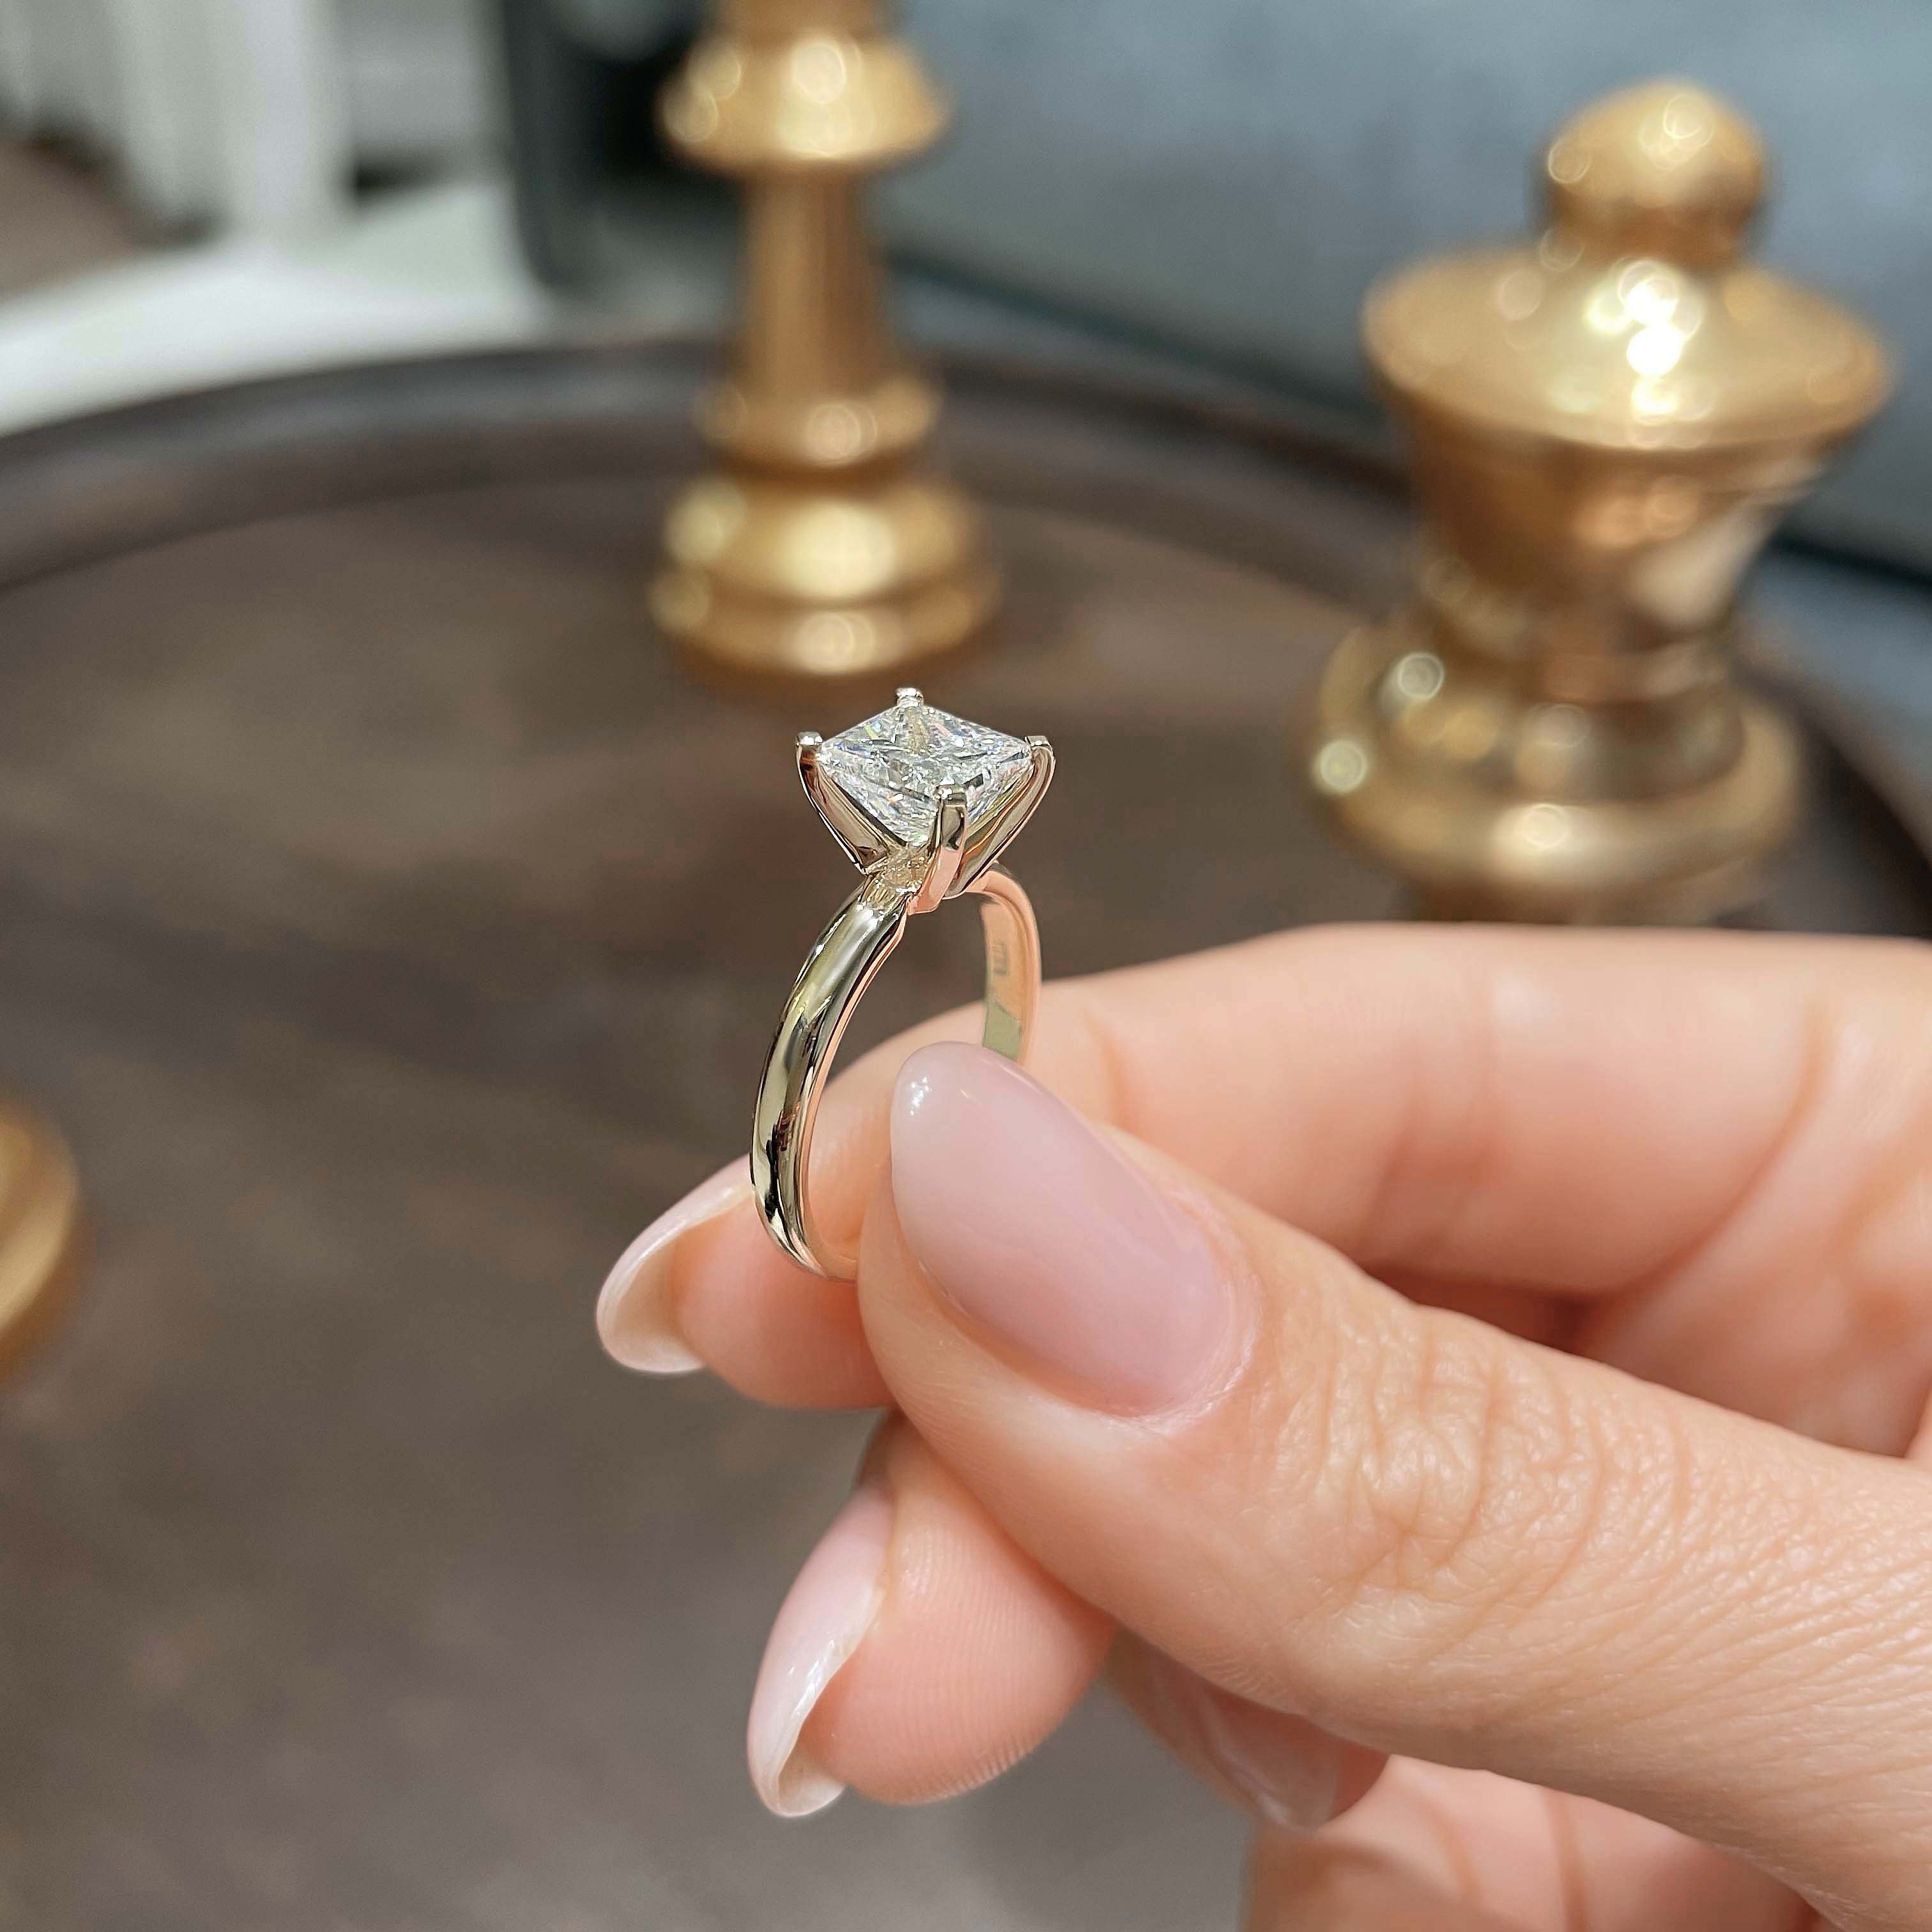 Isabelle Lab Grown Diamond Ring   (1.5 Carat) -18K Yellow Gold